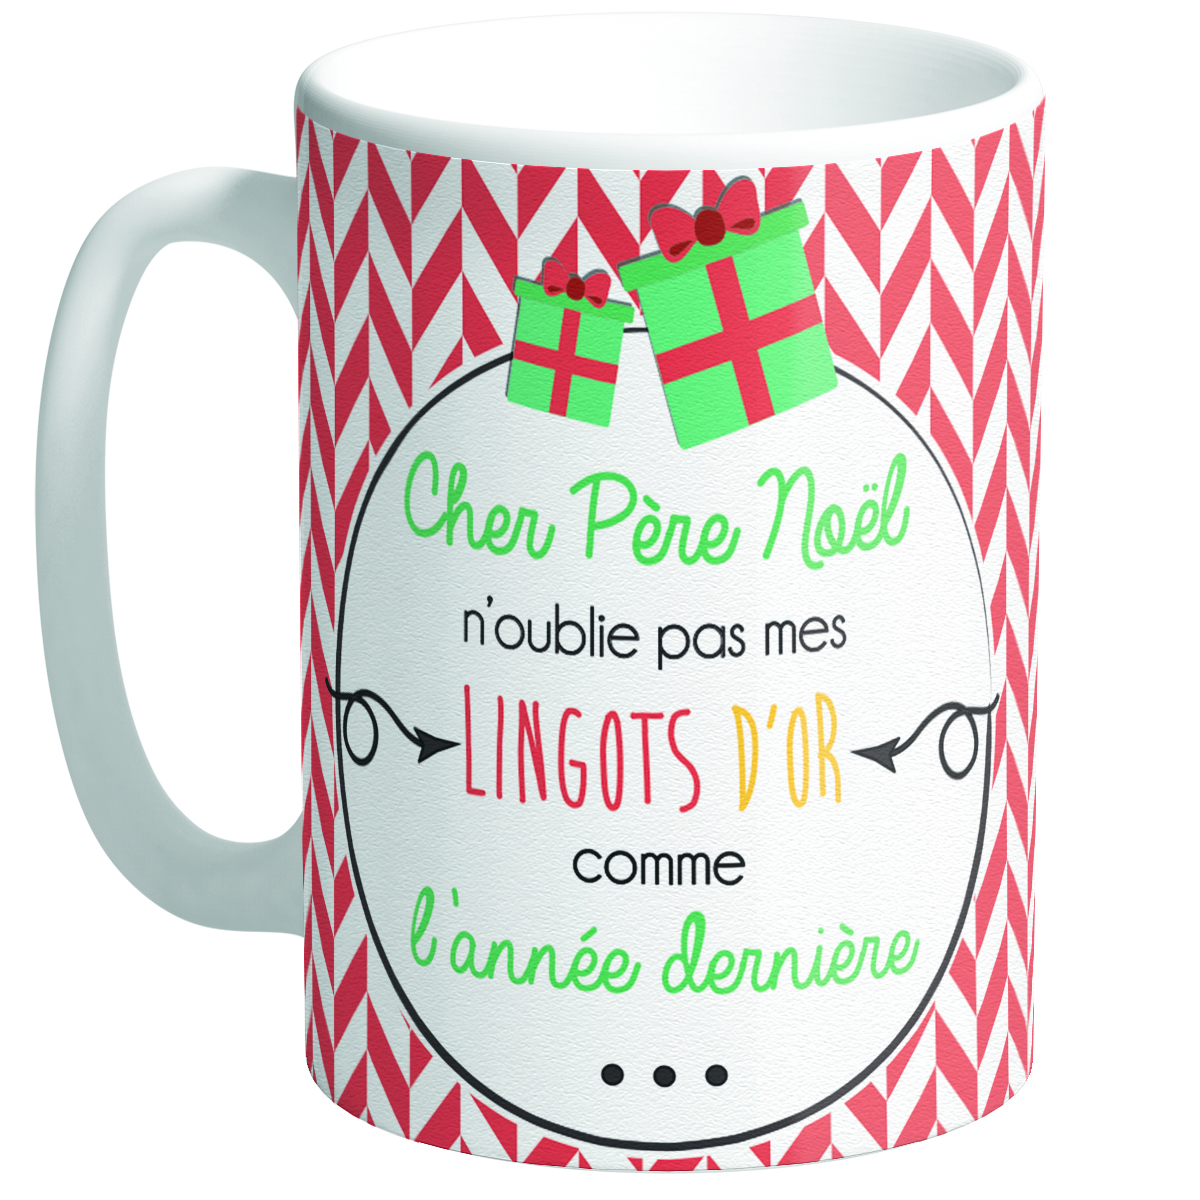 Grand mug céramique \'Messages Noël\' vert rouge (Cher Père Noël)  - [Q3357]